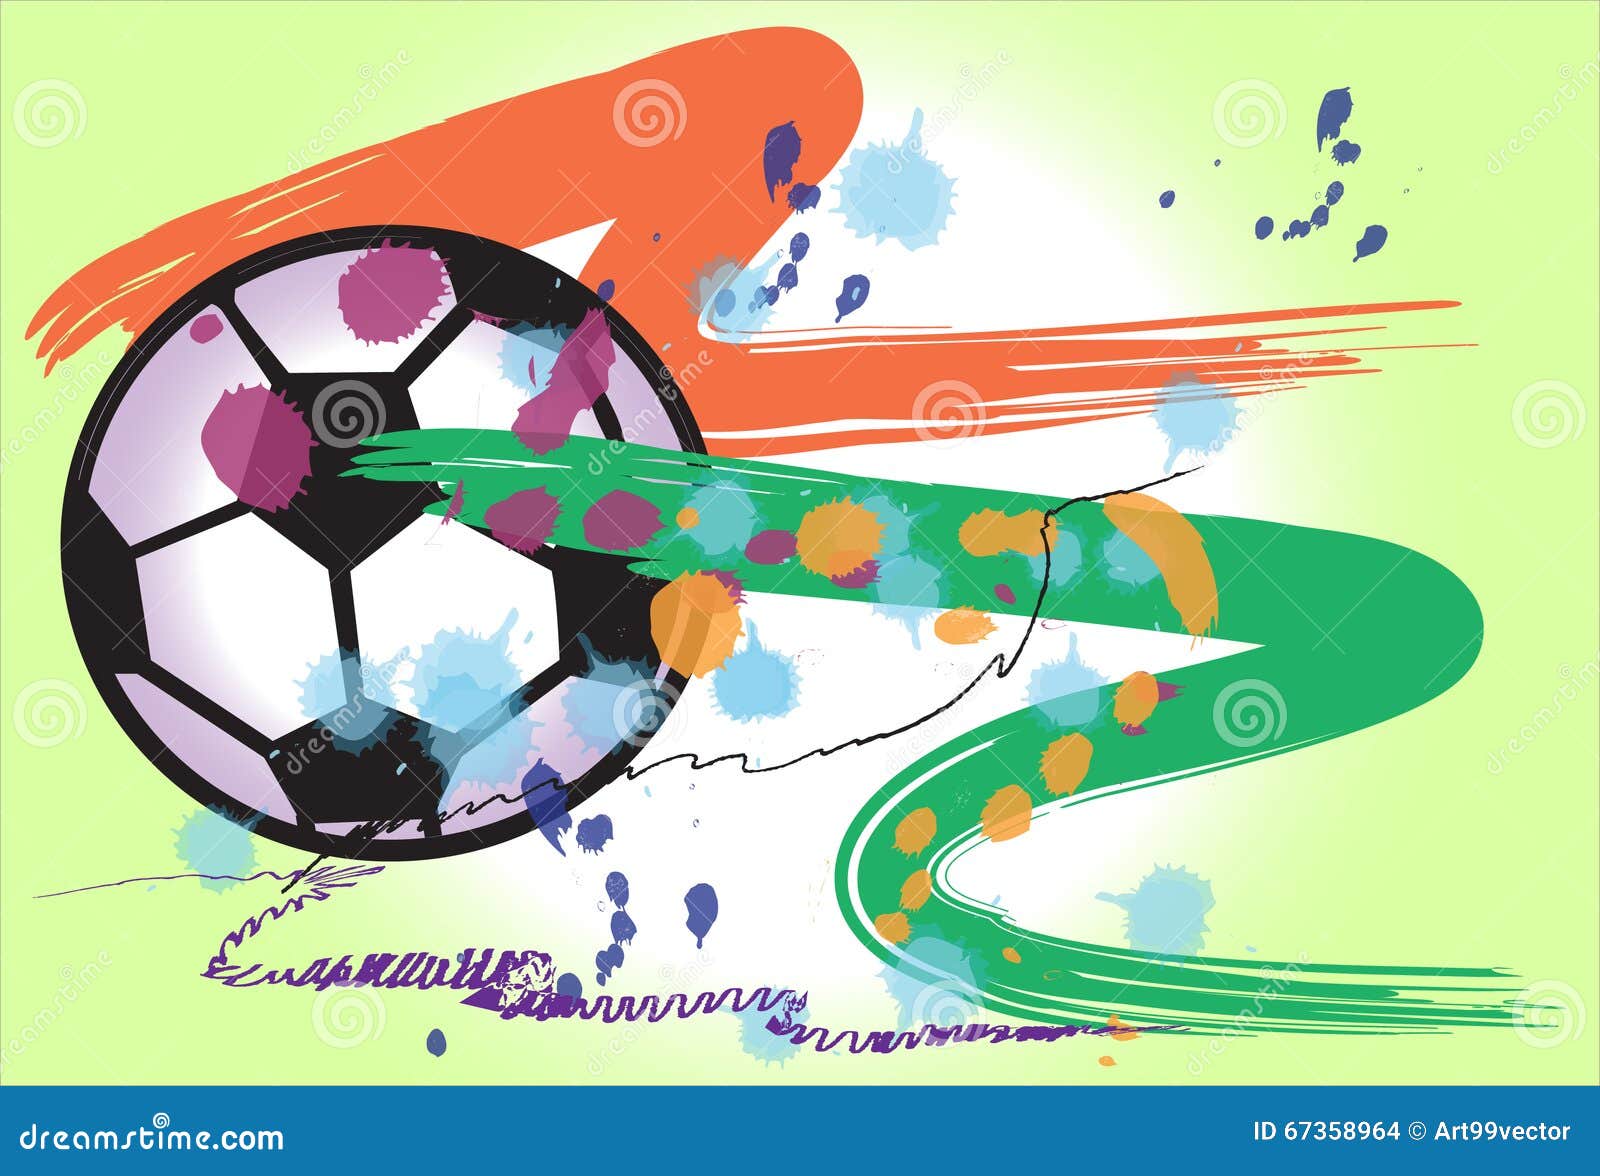 He graphics. Football Theme Art Design. World Cup Soccer Art.